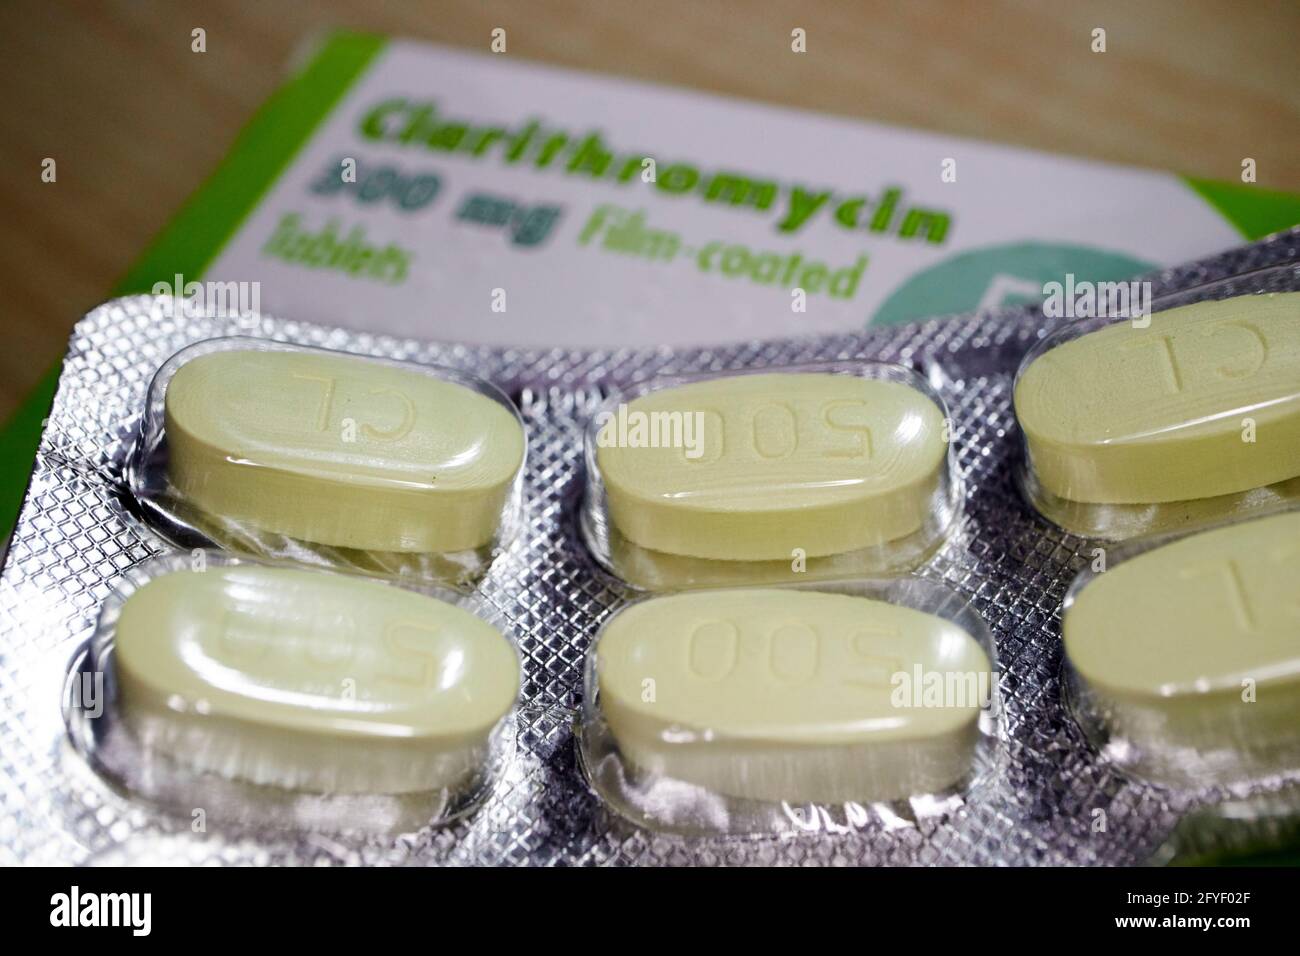 ciclo di claritromicina compresse di prescrizione antibiotica in confezione blister Foto Stock